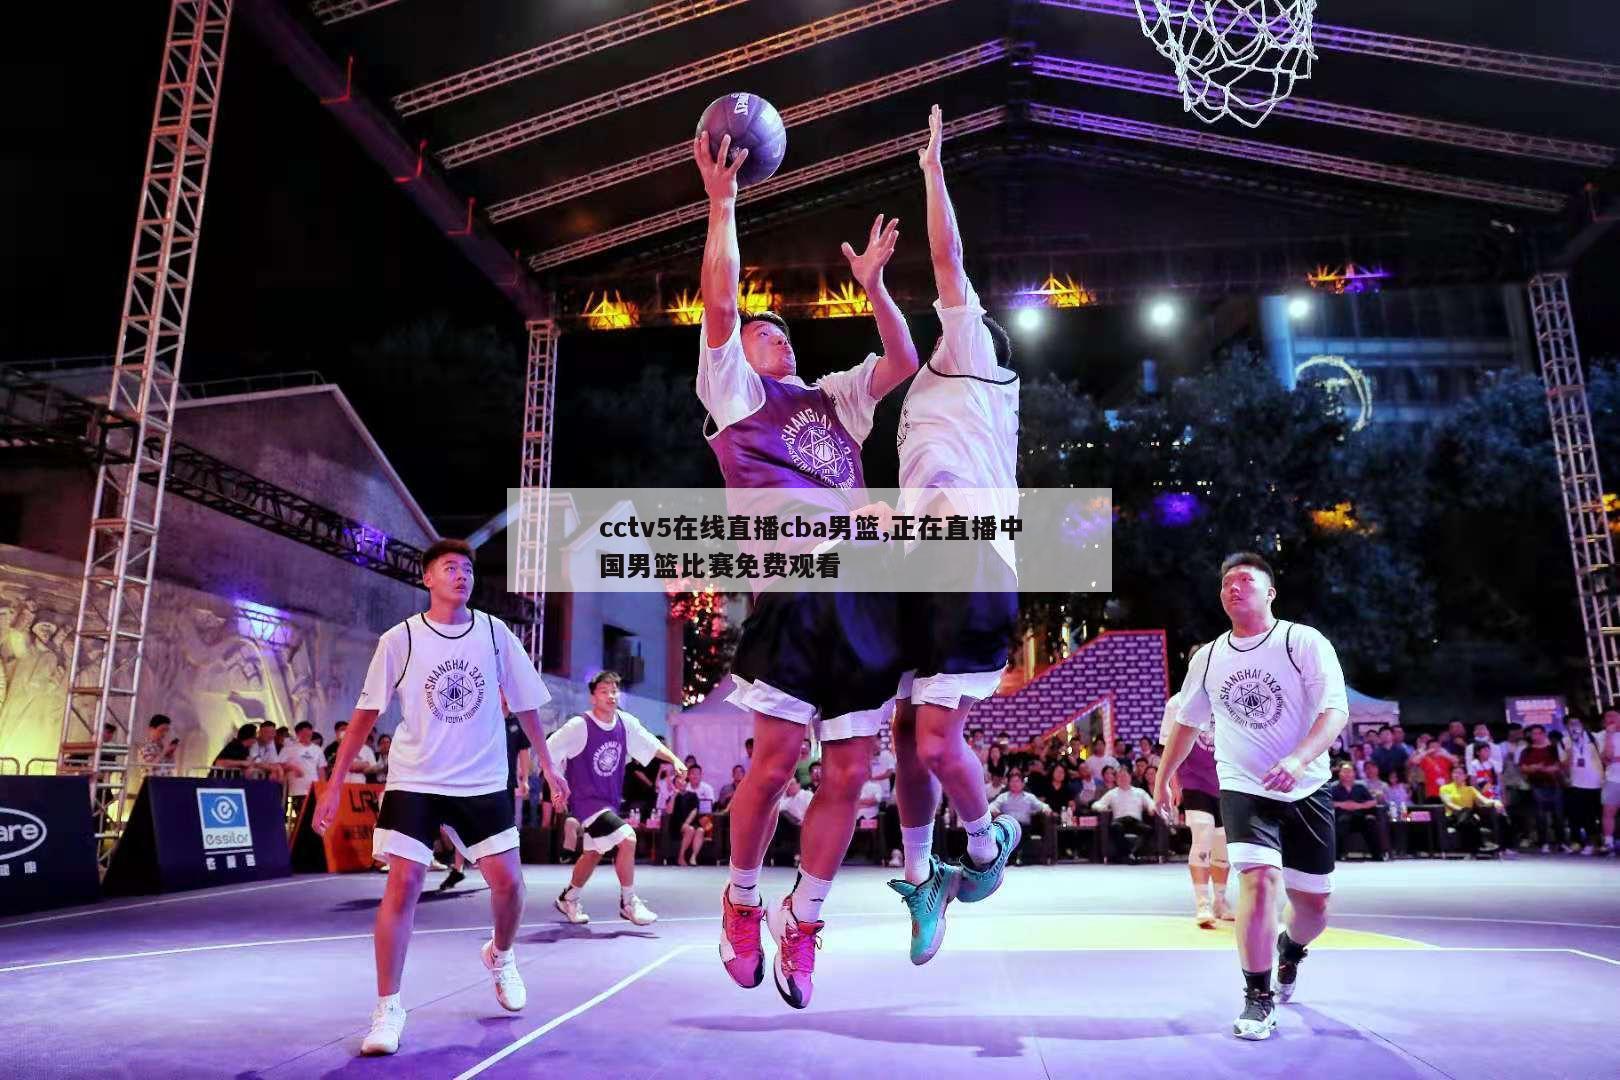 cctv5在线直播cba男篮,正在直播中国男篮比赛免费观看